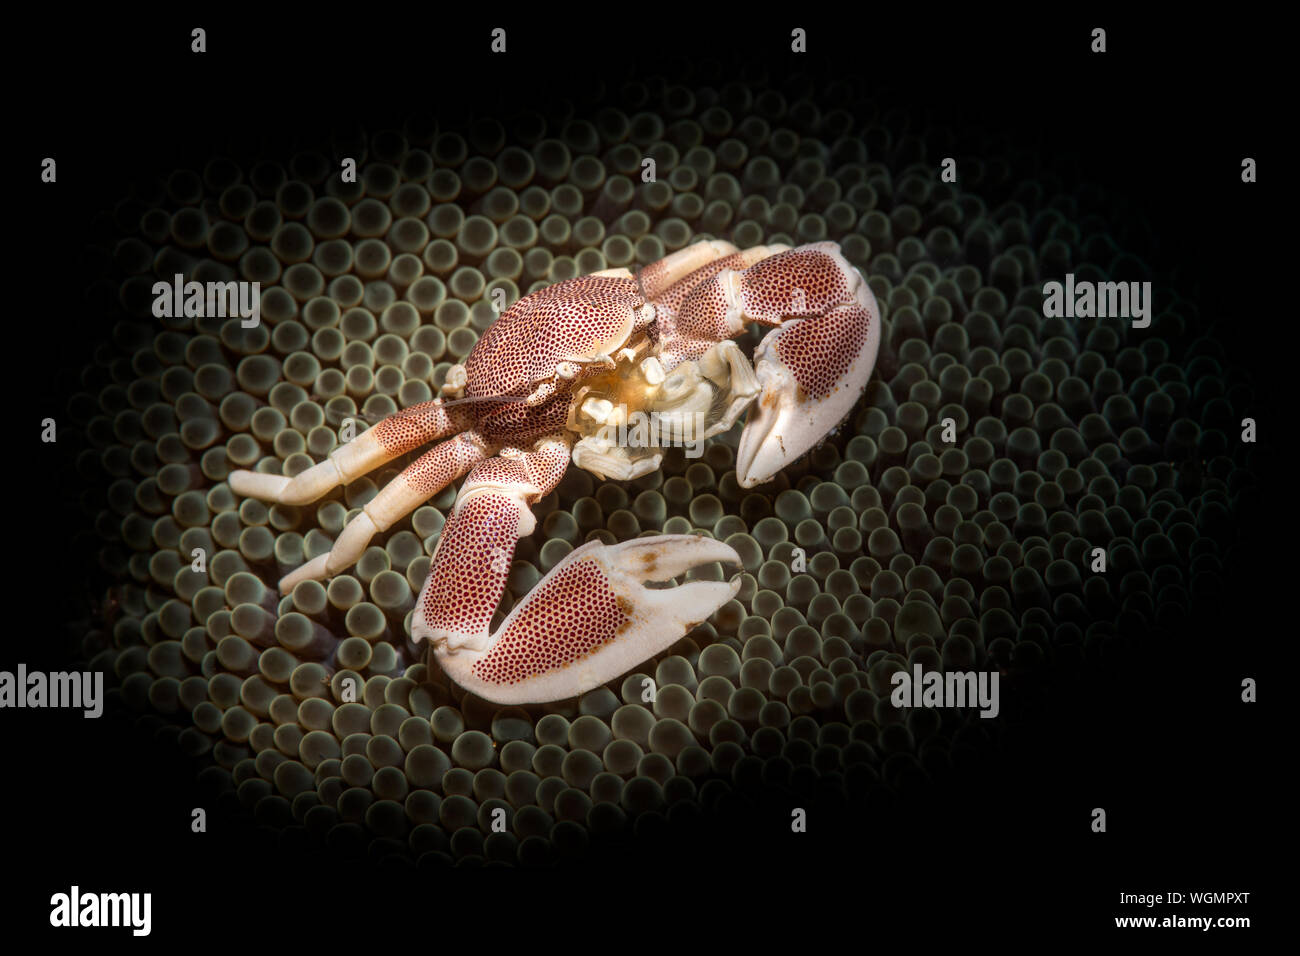 Un cangrejo de porcelana, iluminado con un snoot, descansa en una anémona de mar esperando para alimentar a los animales la anémona de capturas. Foto de stock